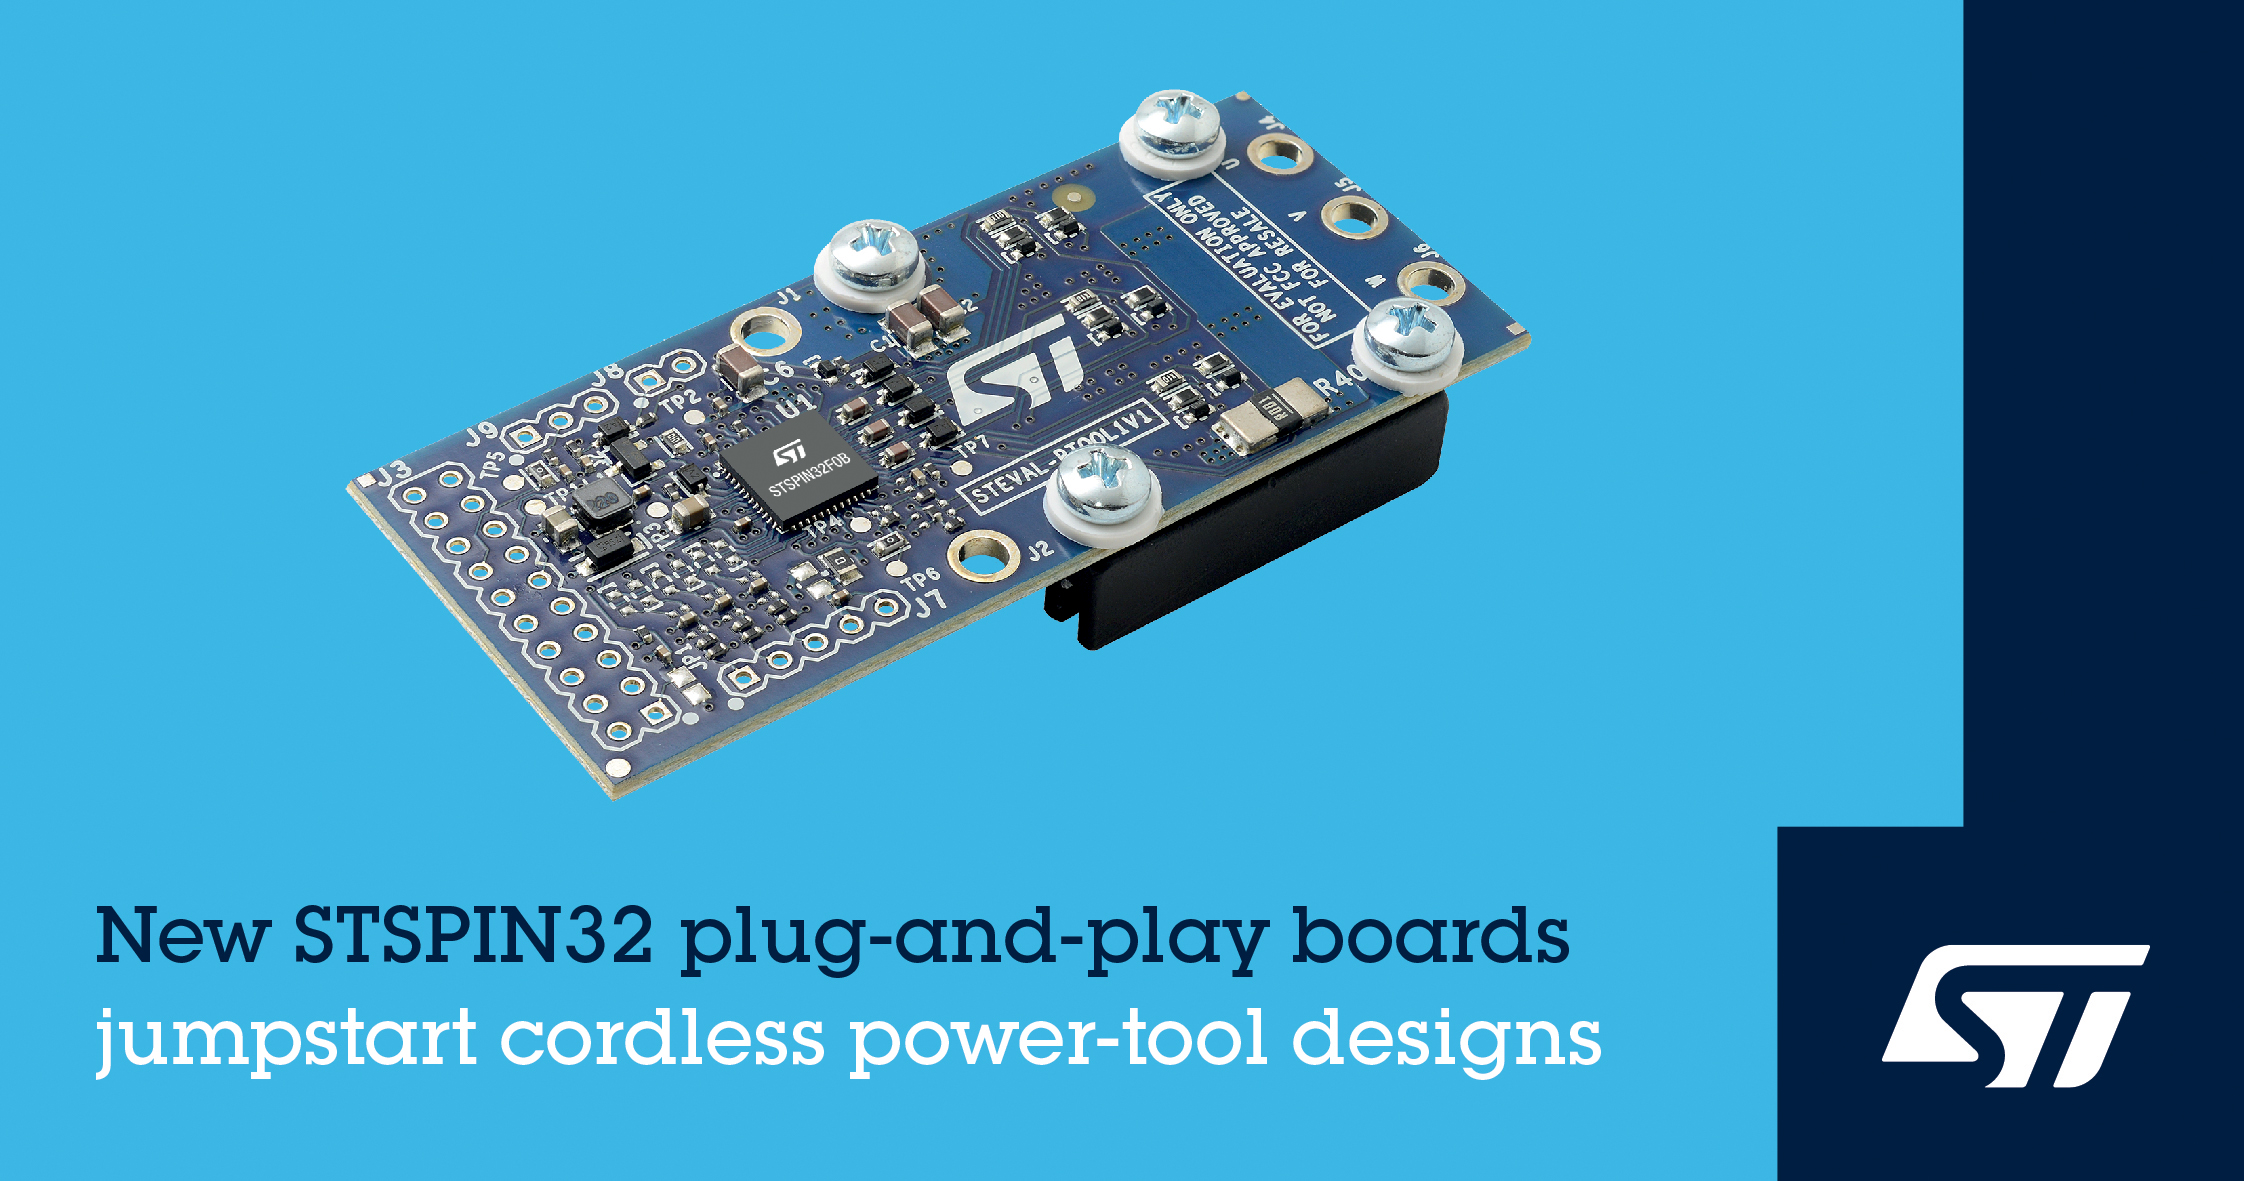 意法半导体推出即插即用STSPIN32原型板，简化无线电动工具开发